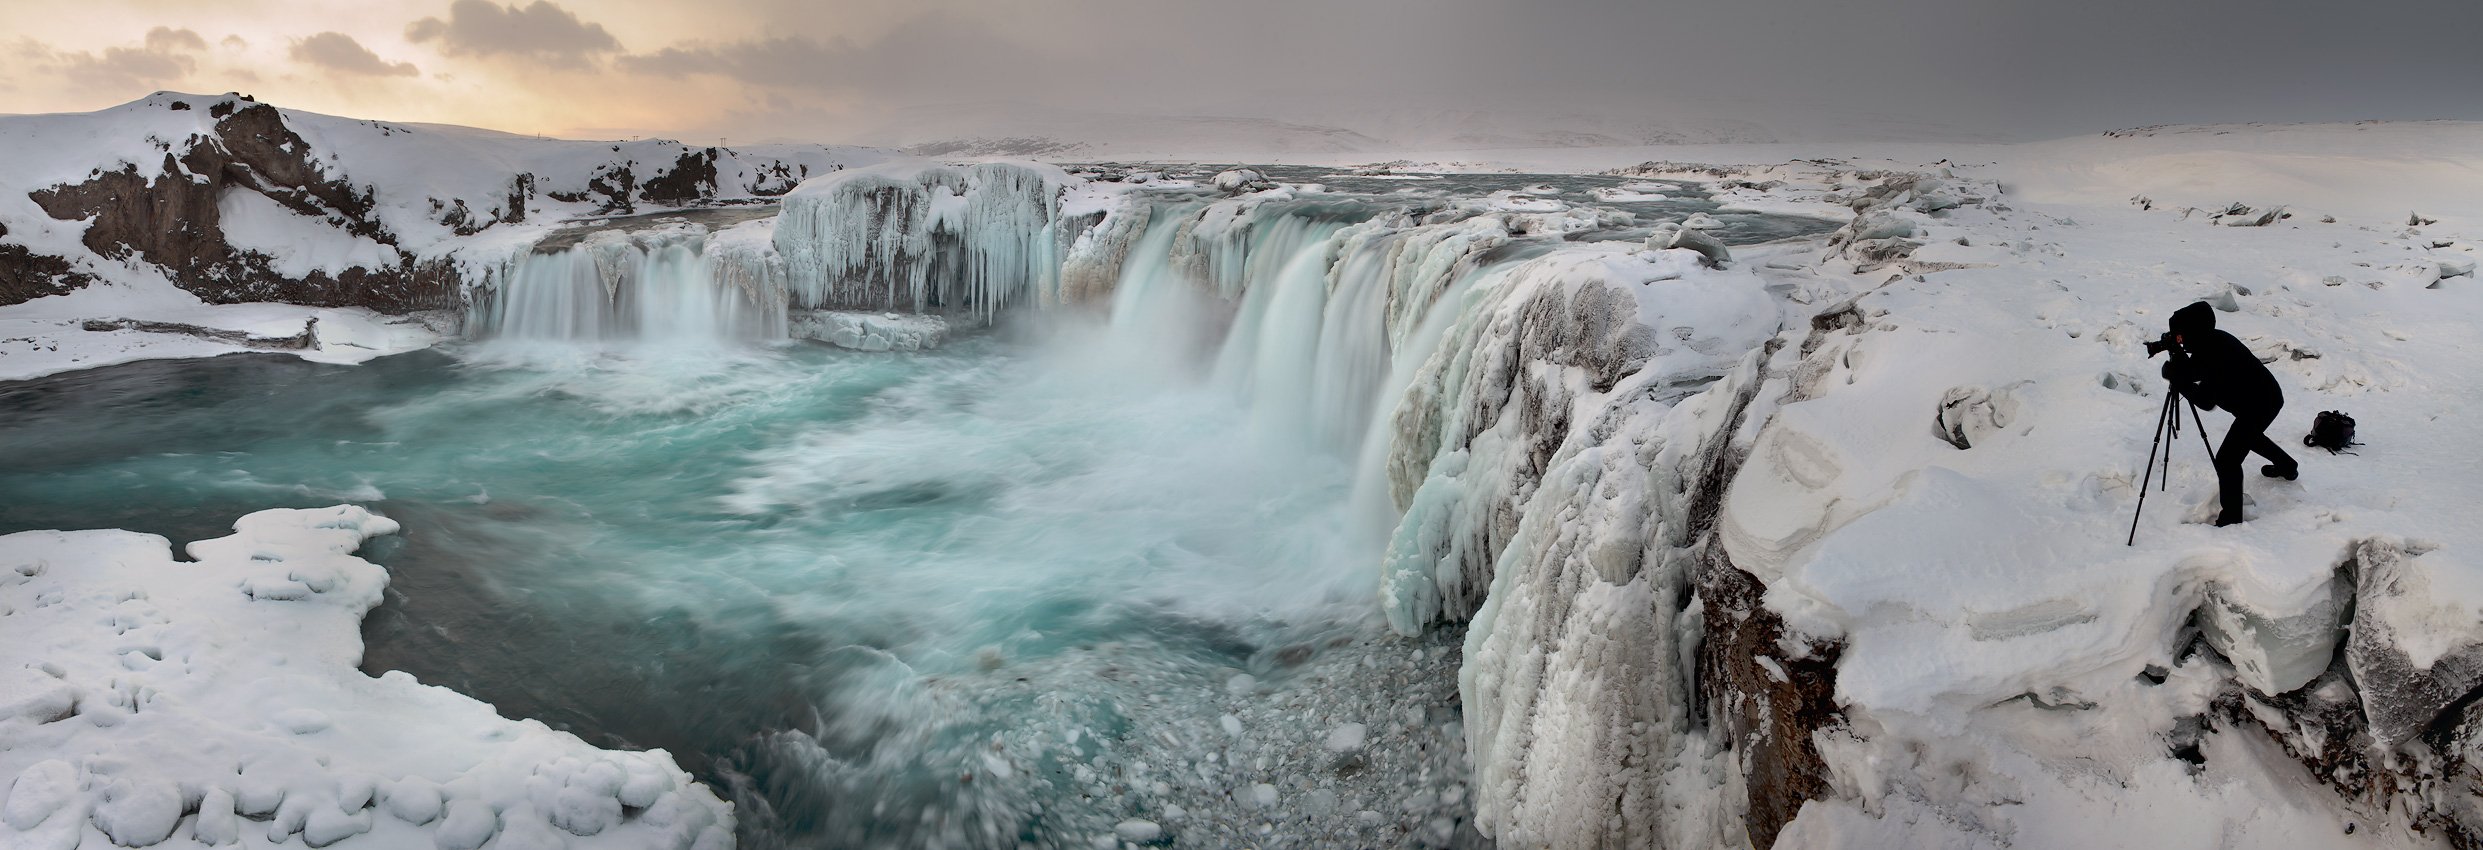 iceland, исландия, водопад годафосс, Yury Pustovoy